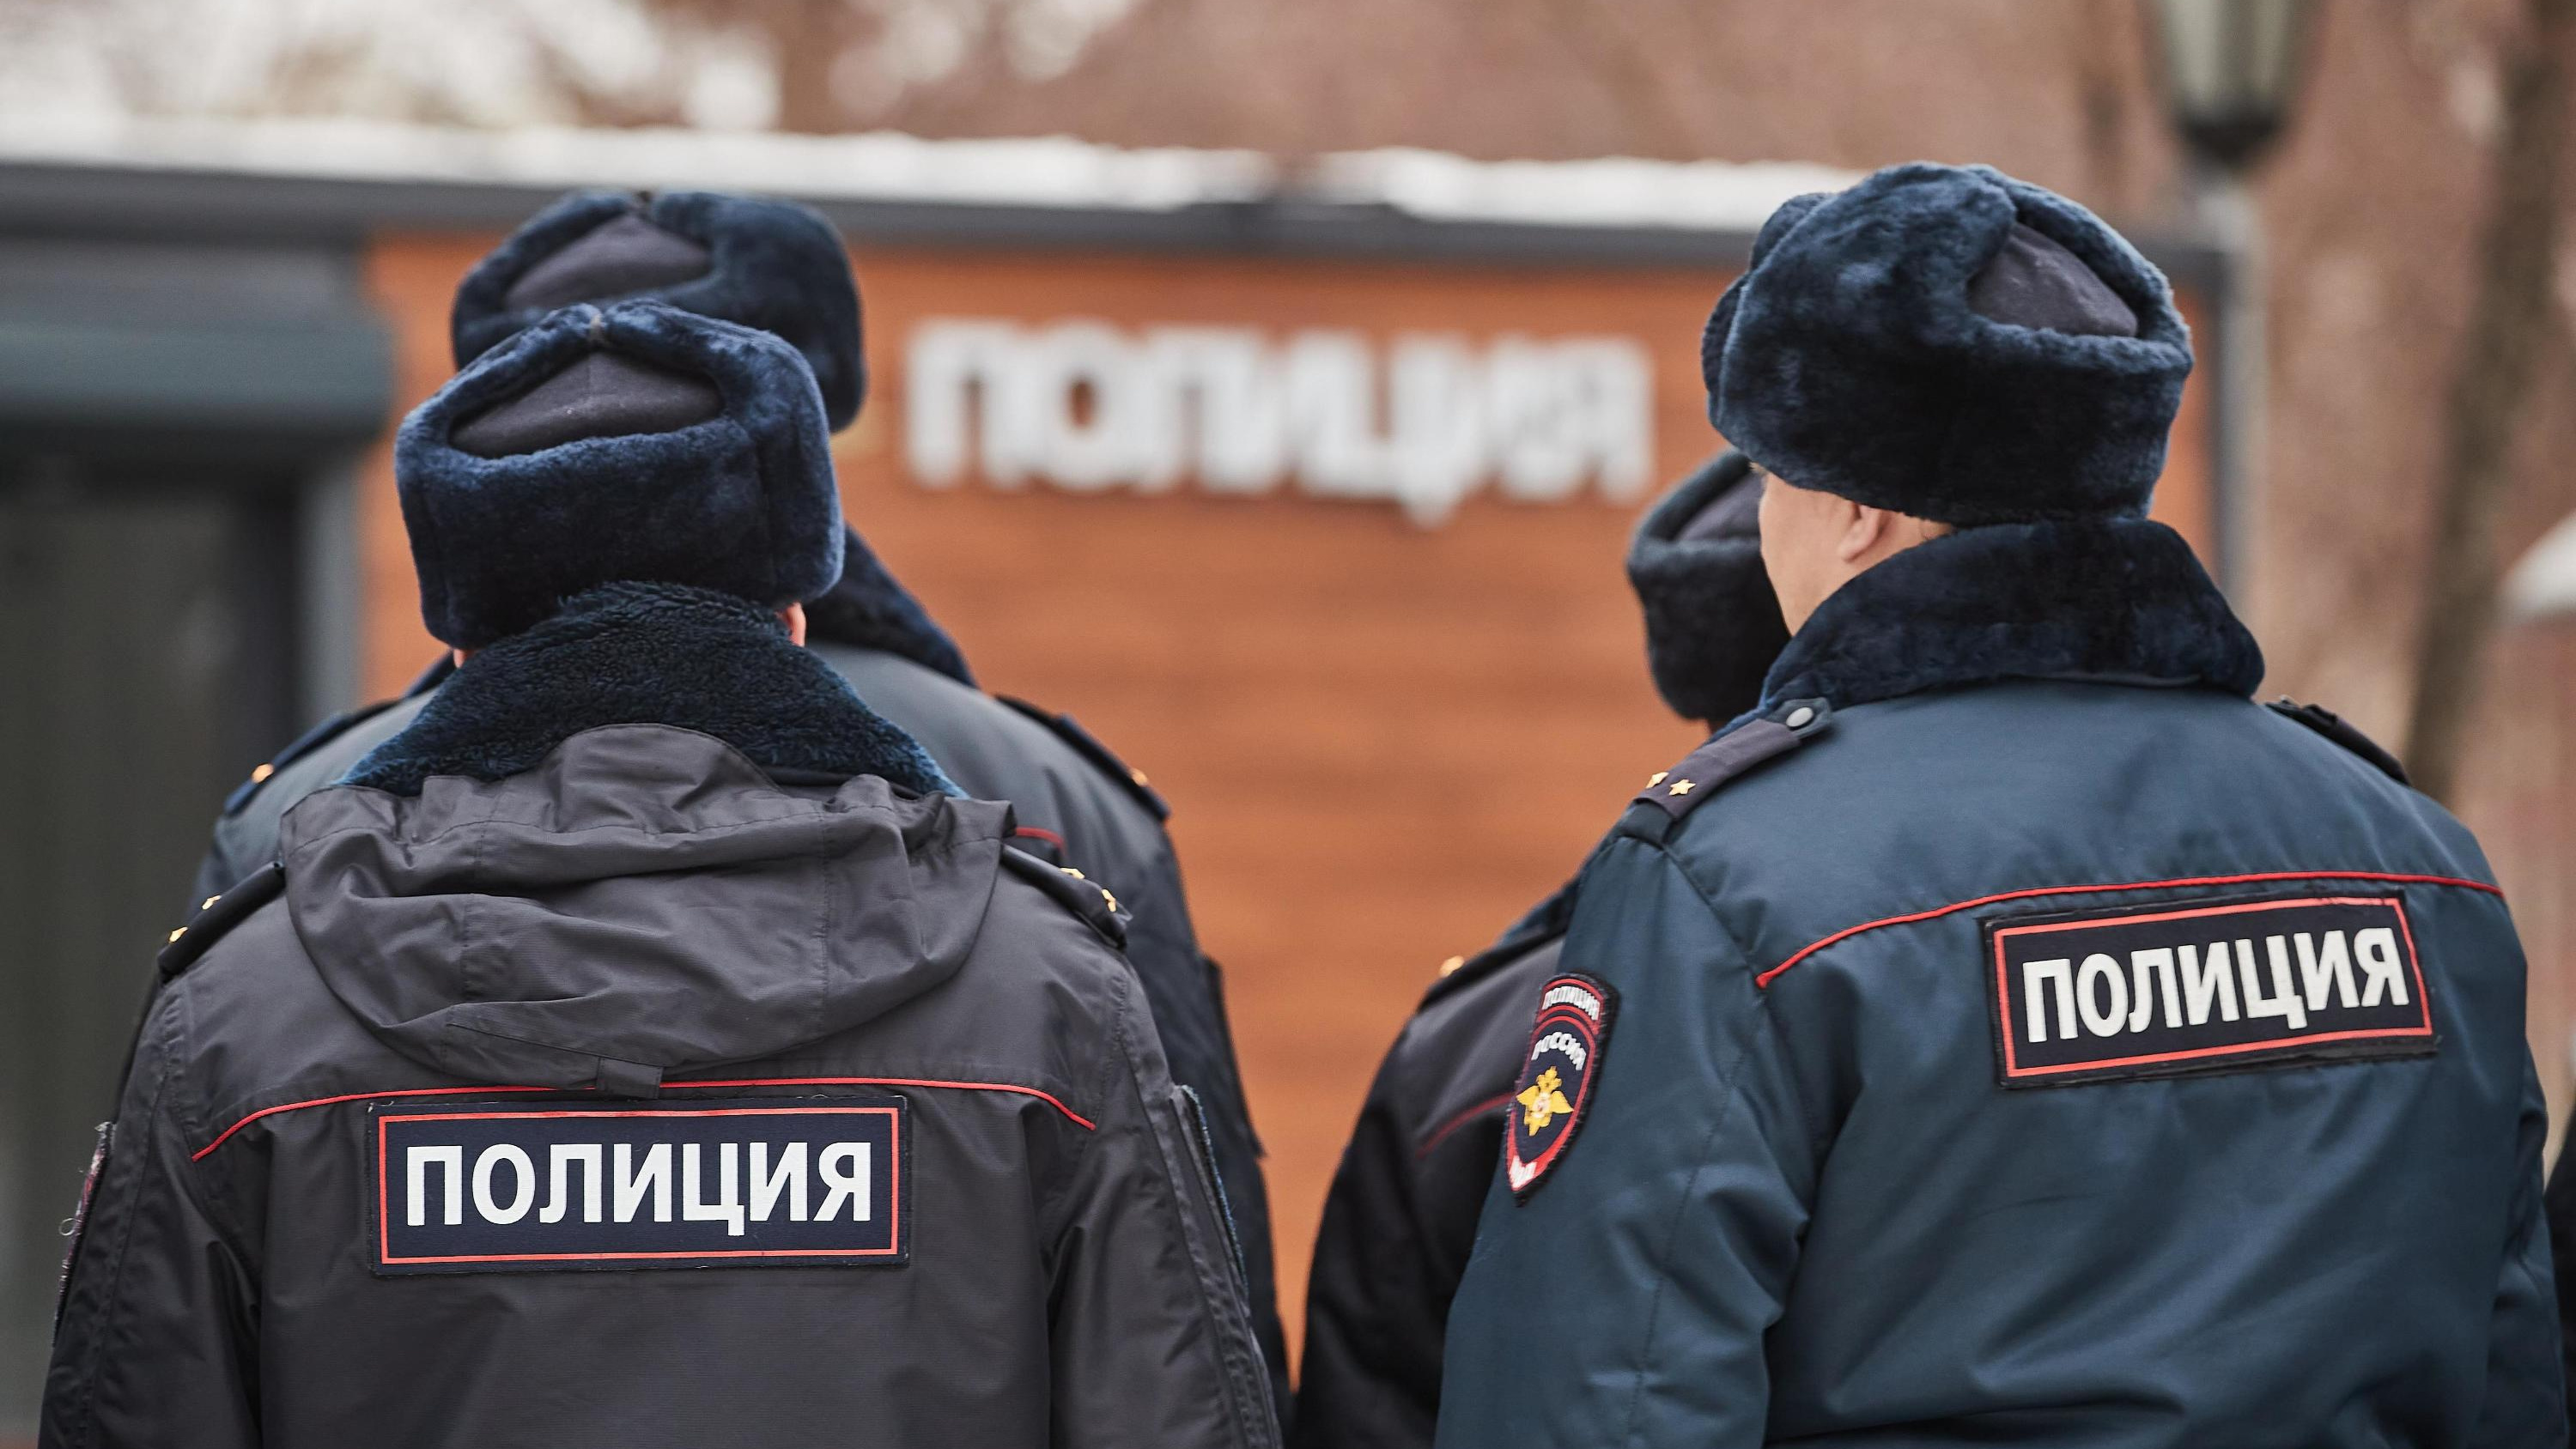 «Осталась стоять в зале»: мужчина несколько раз ударил 13-летнюю девочку в магазине Новосибирска